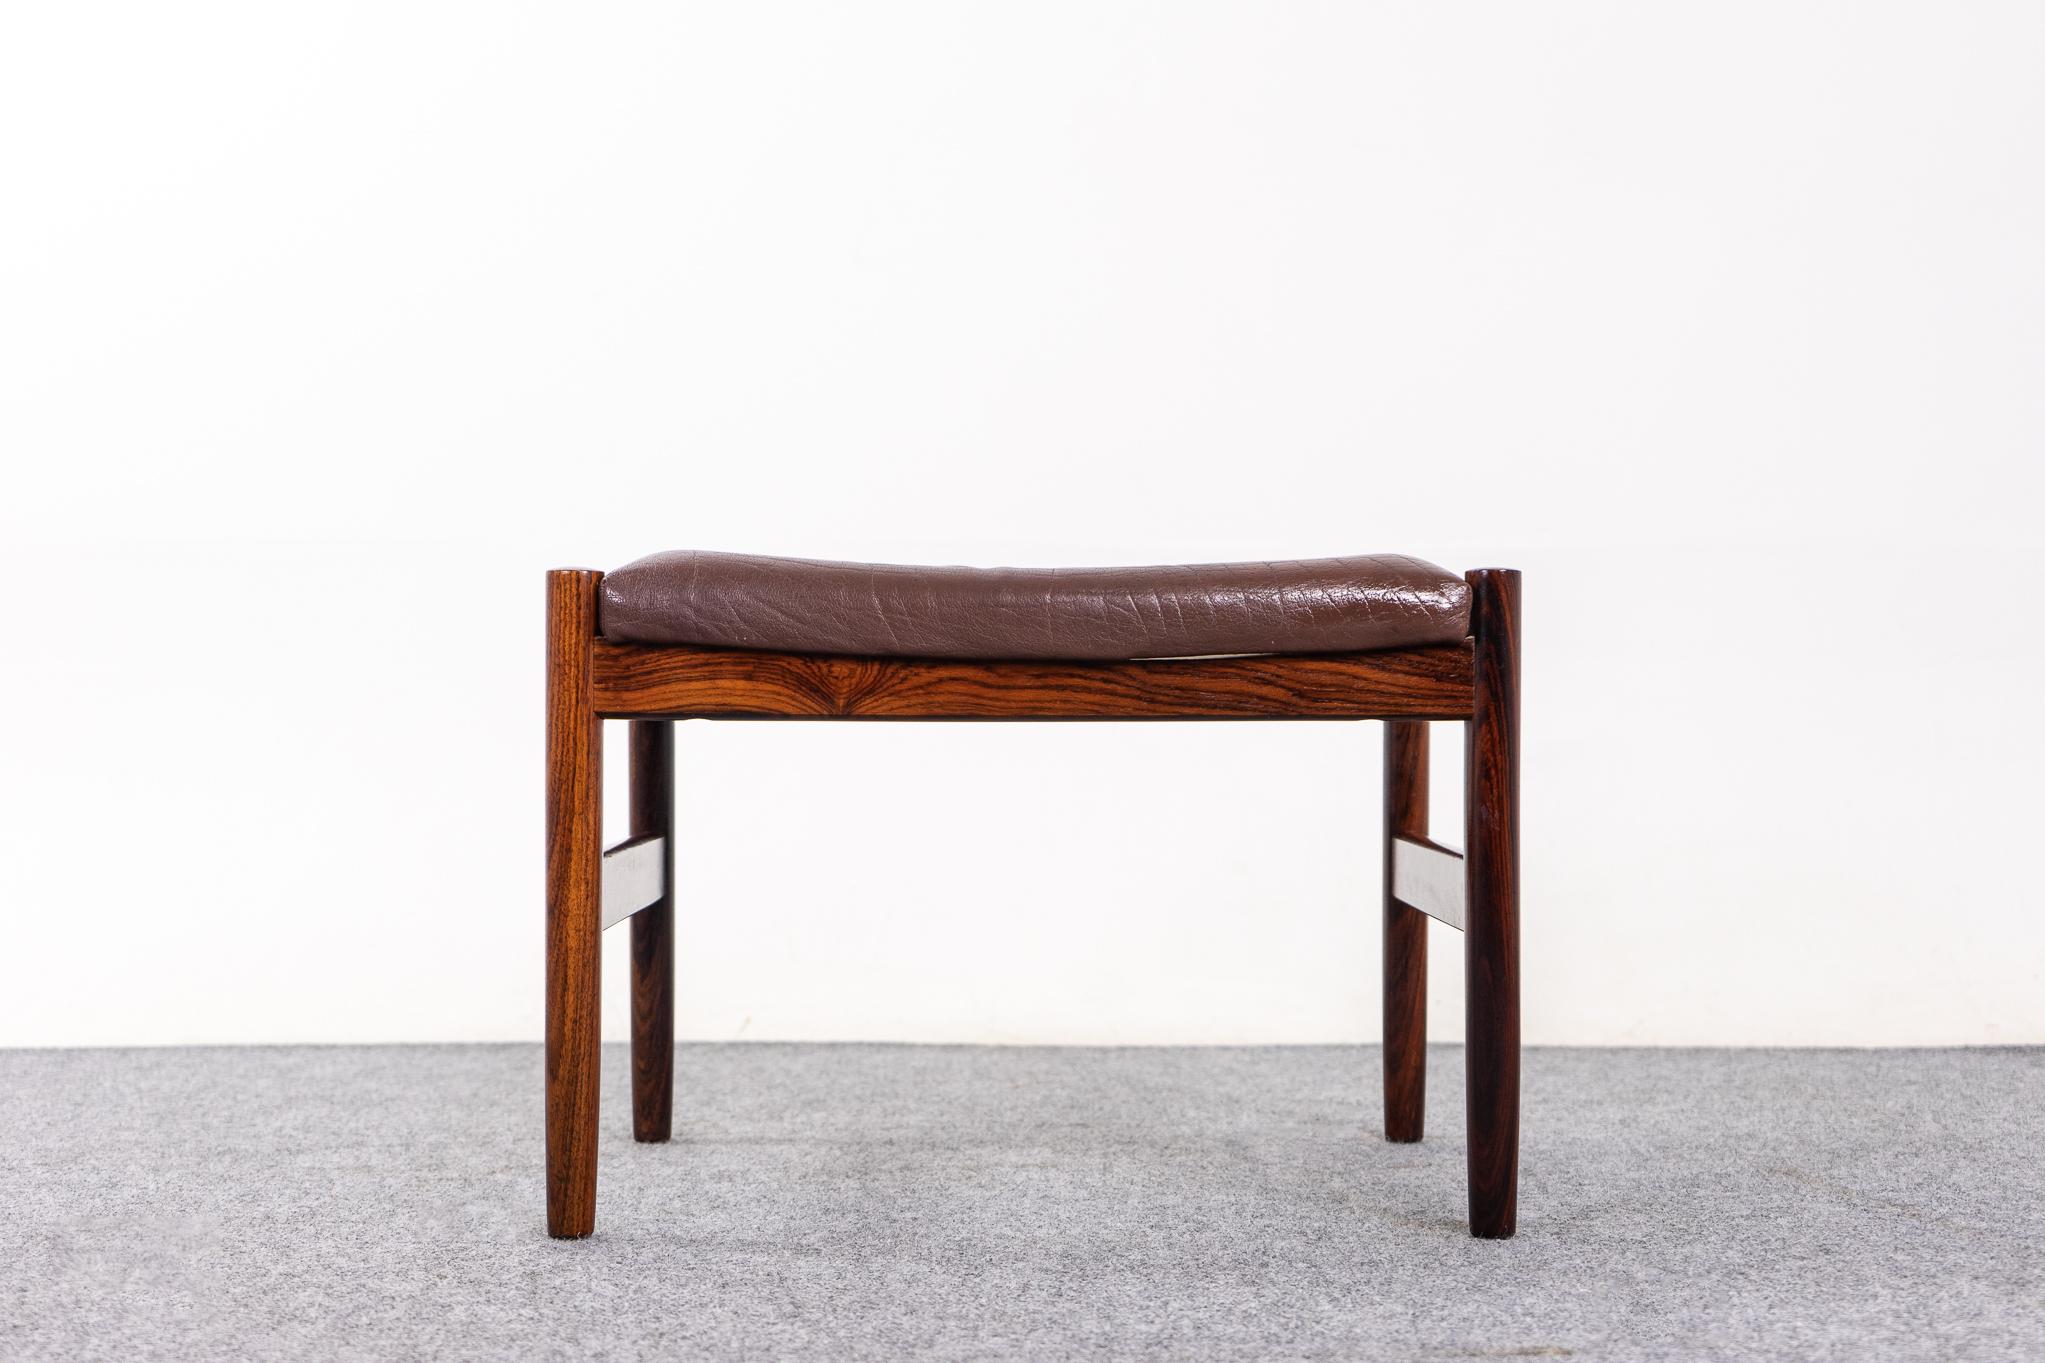 Moderner dänischer Hocker aus Rosenholz von Spottrup, ca. 1960. Das schlichte, moderne und kompakte Design lässt sich mit praktisch jedem Sitzmöbel kombinieren. Leicht in der Wohnung zu bewegen. Herstellerzeichen von Spottrup intakt. Ruhen Sie Ihre